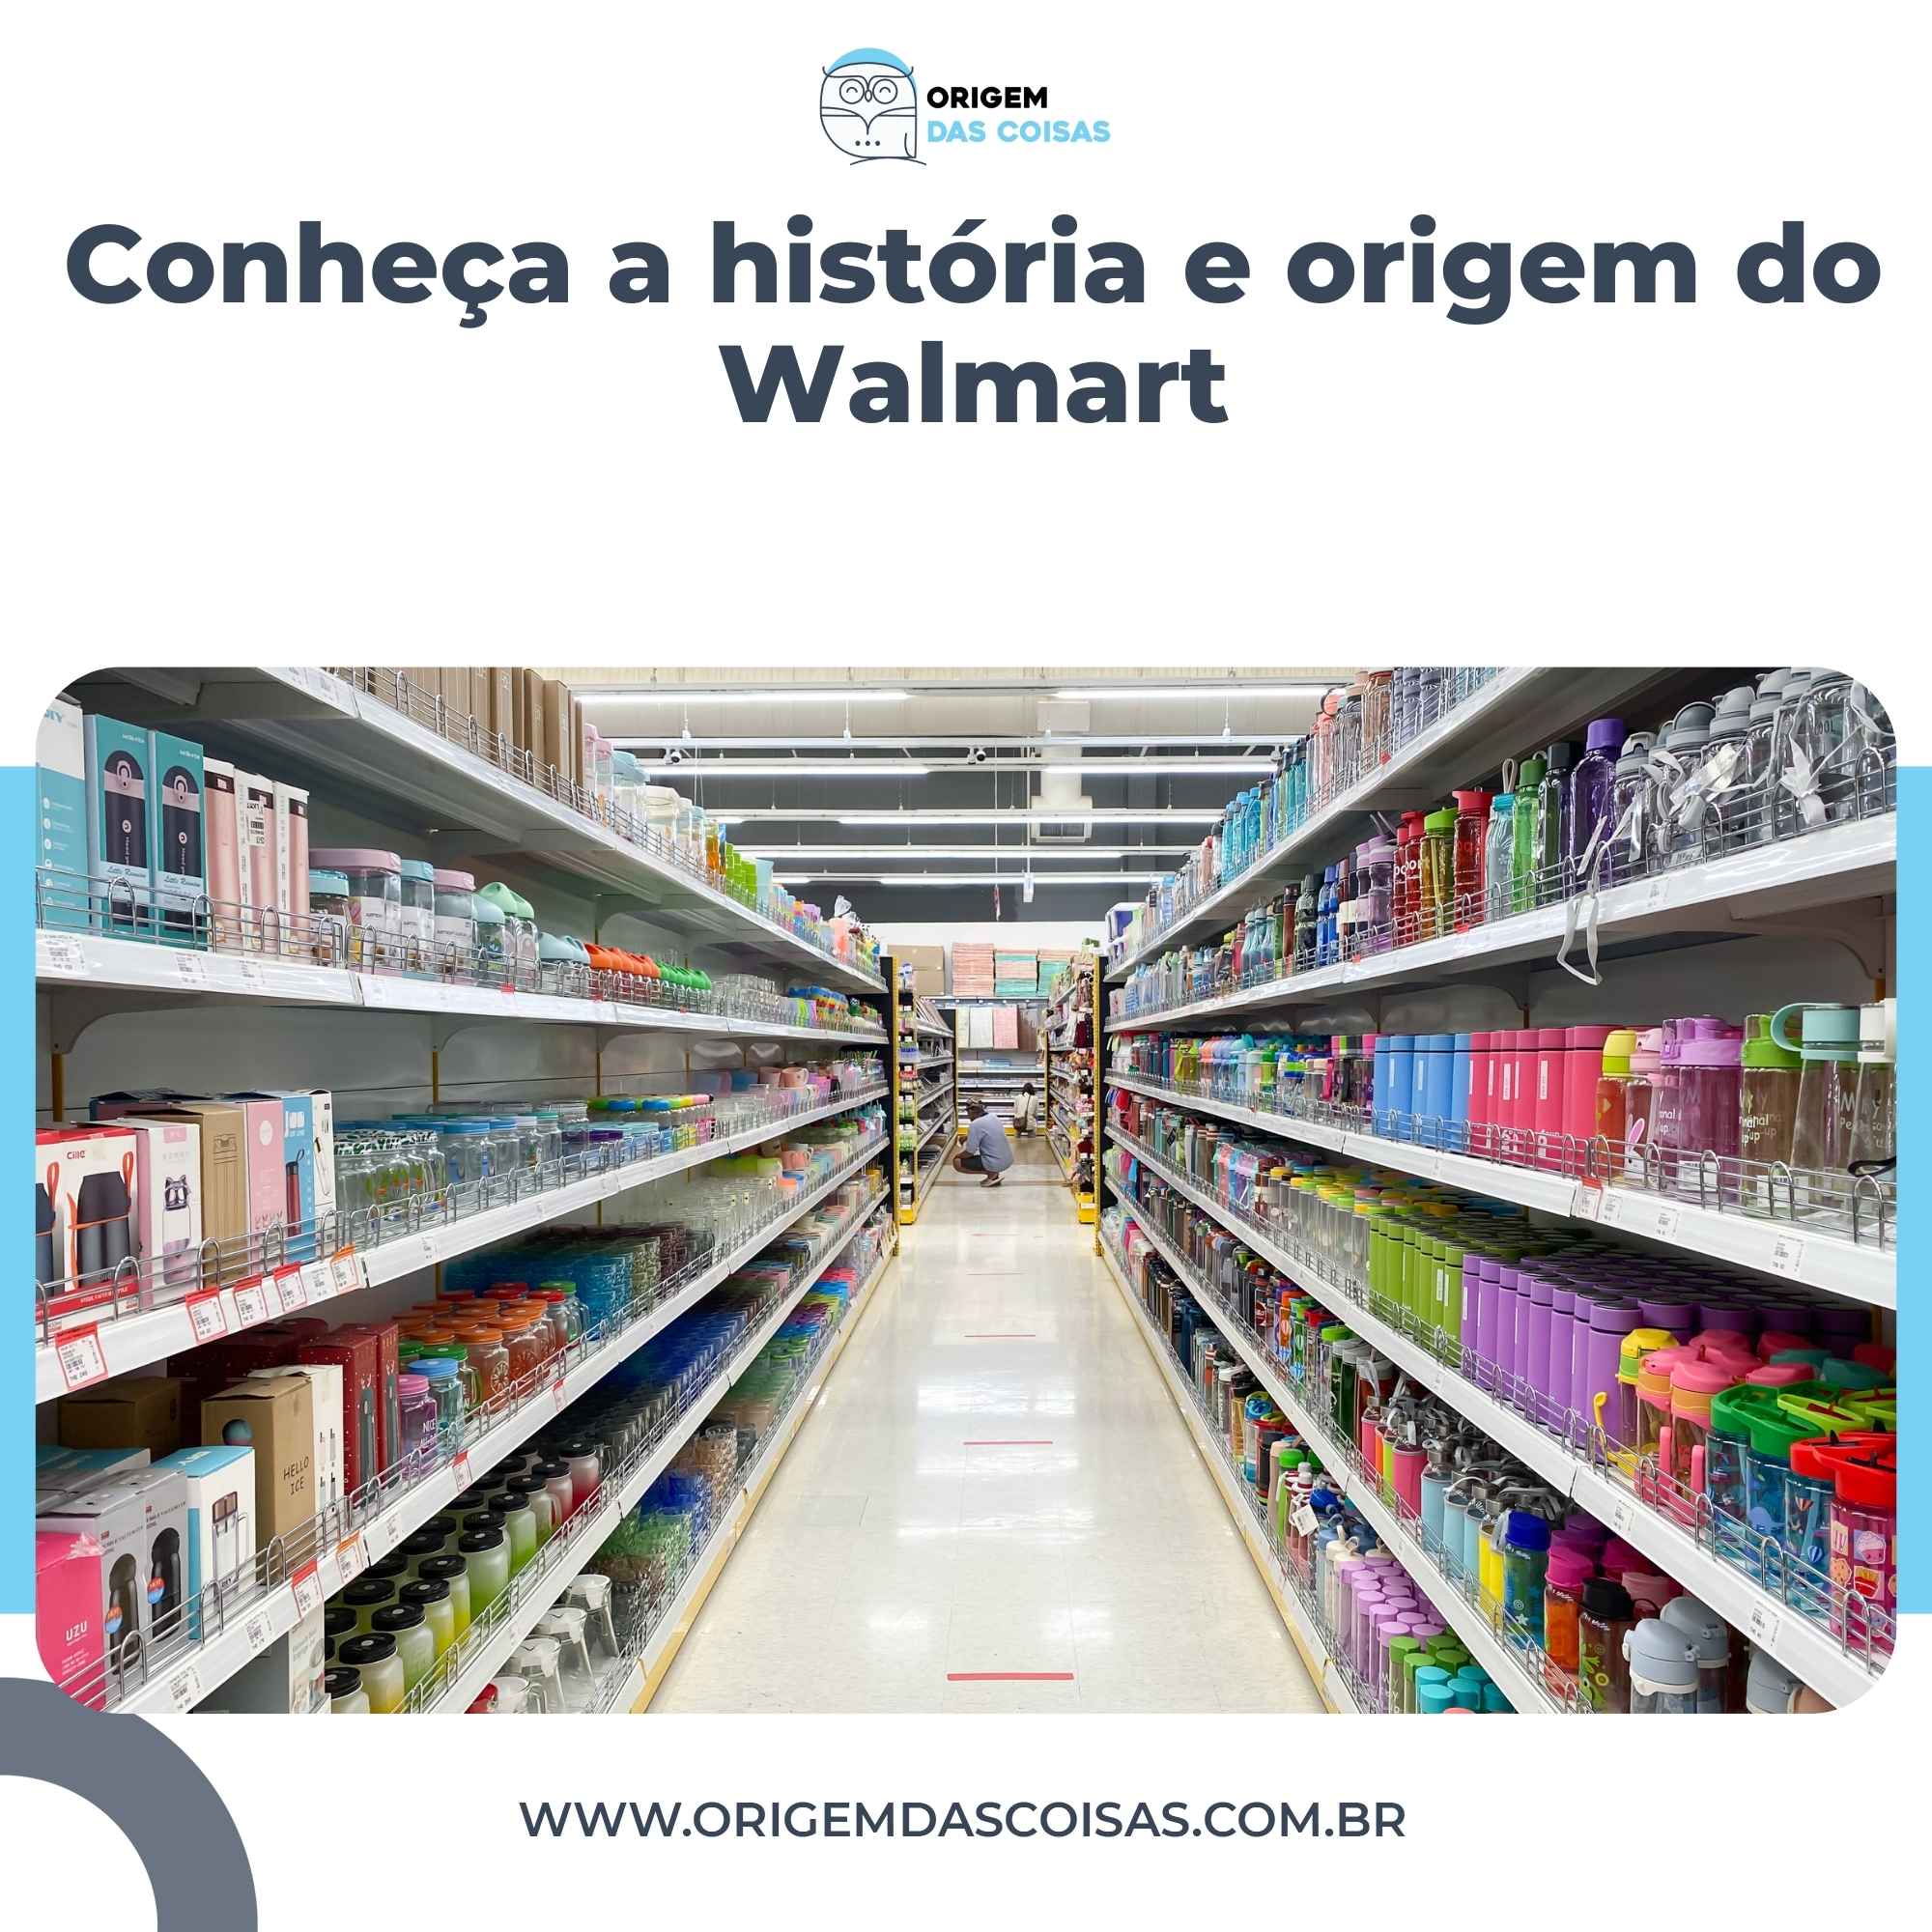 Conheça a história e origem do Walmart